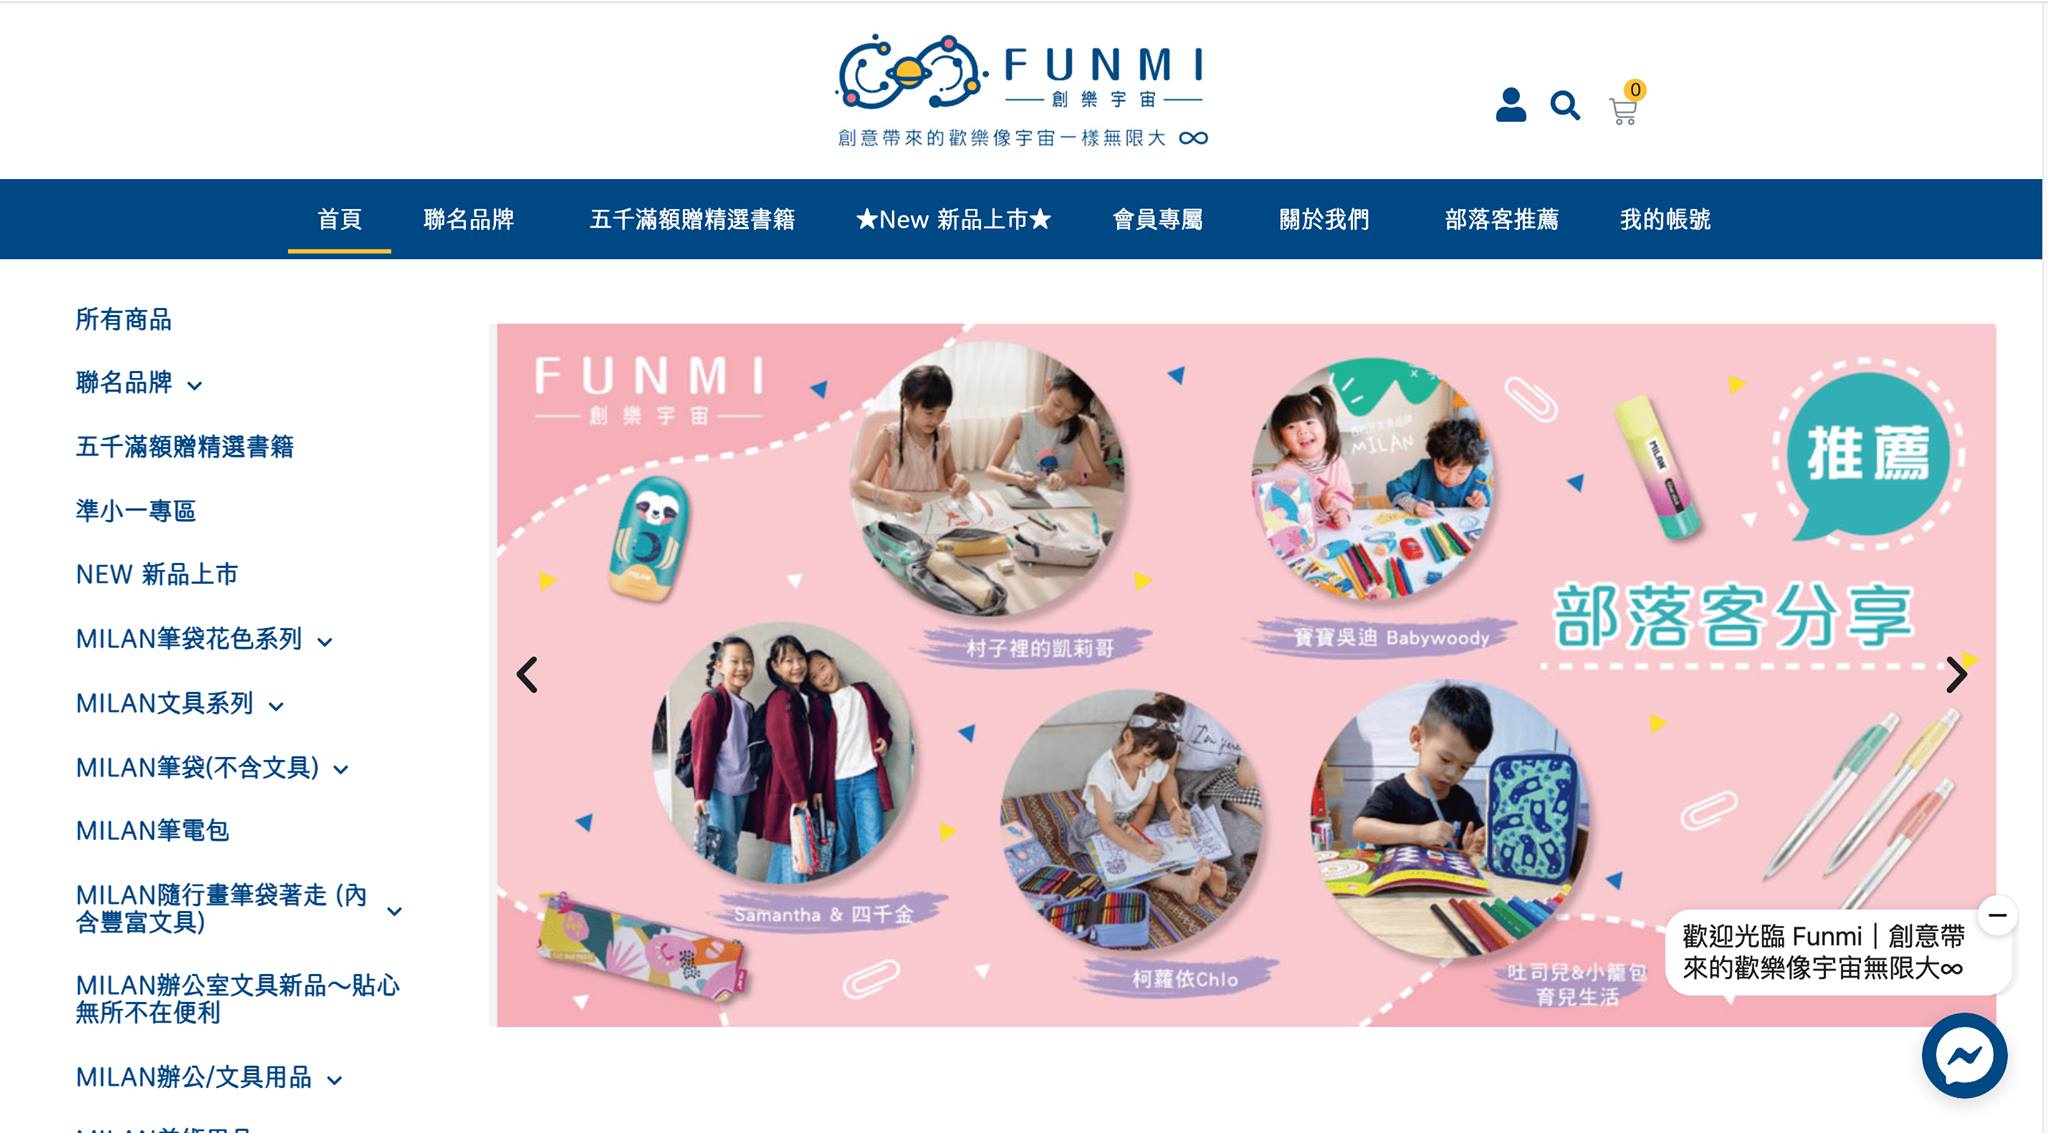 FUNMI 首頁-min